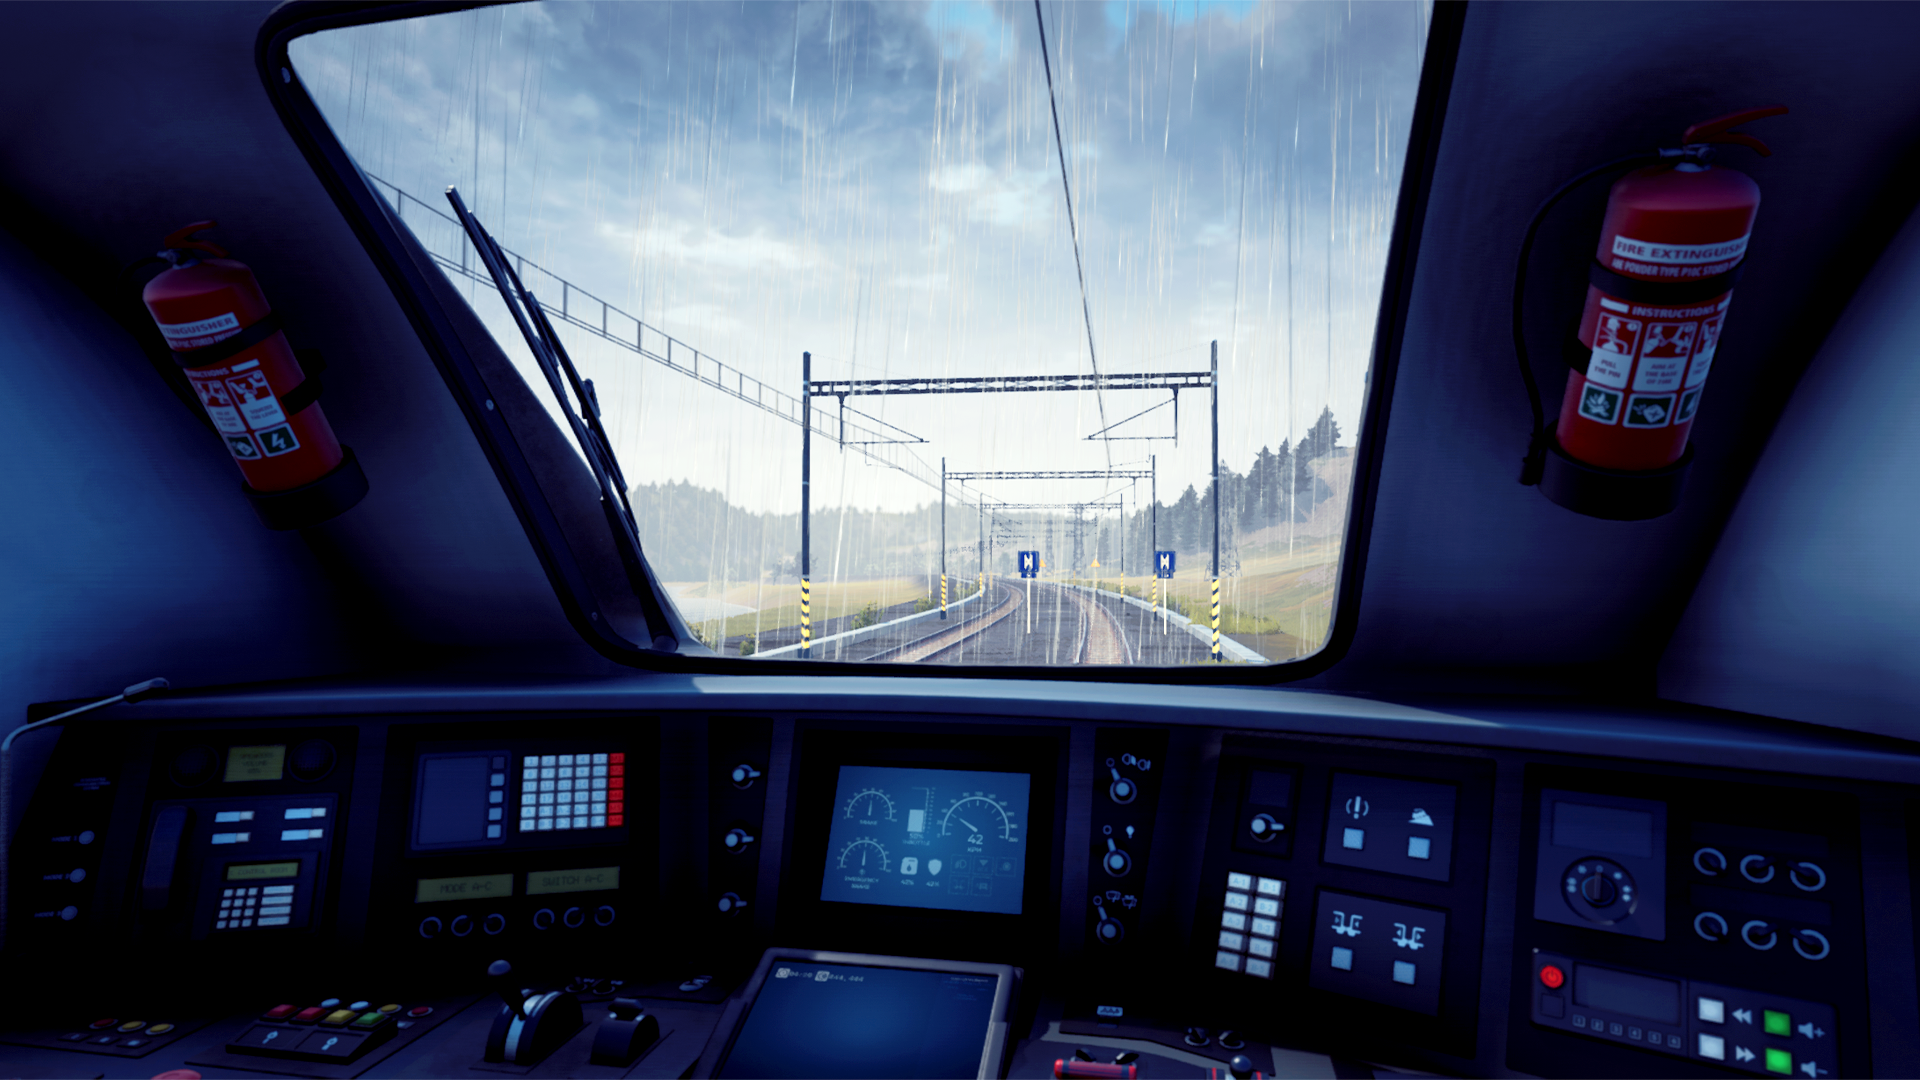 Train Life: A Railway Simulator - Launch | LATAM (cfd1b3c6-94ed-4552-9953-4452c081ea0d)